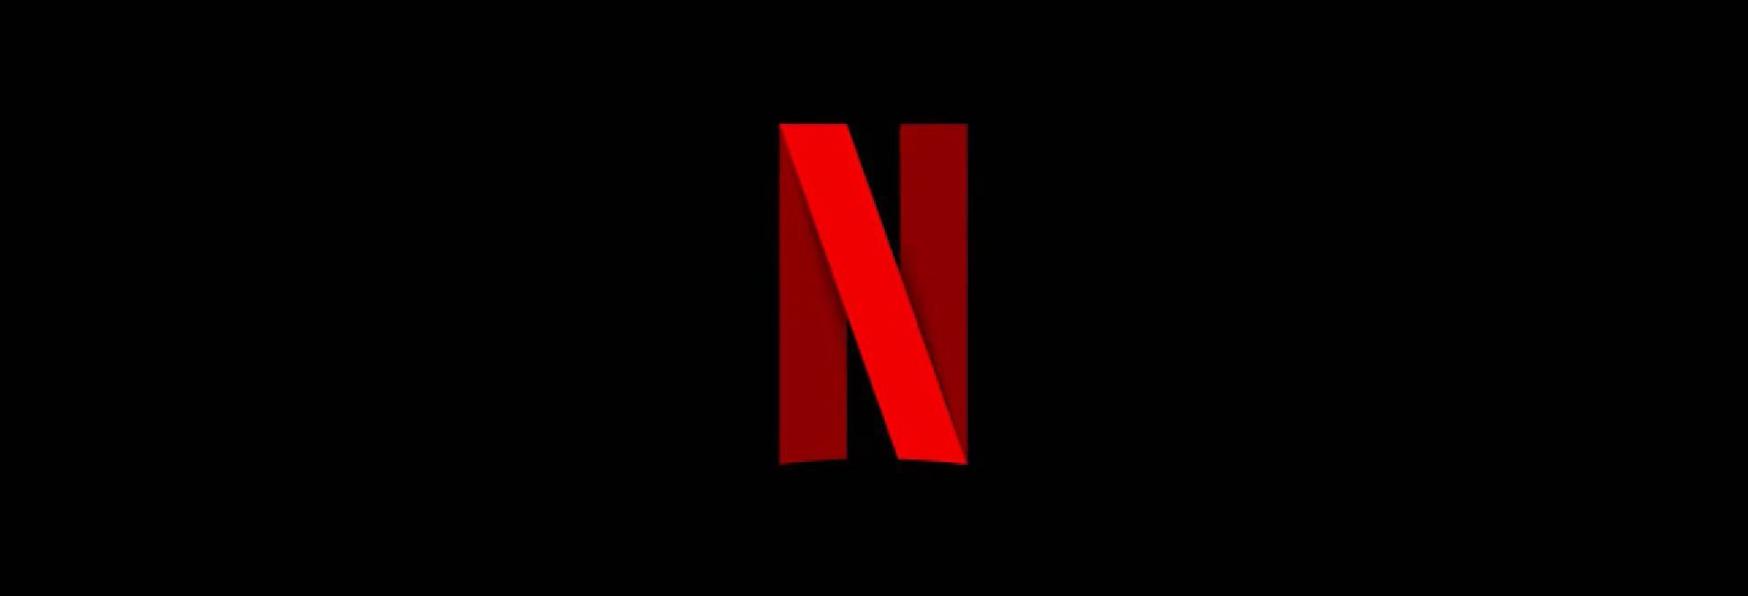 La Pubblicità su Netflix sta per diventare Realtà: la Piattaforma conferma l'arrivo di Abbonamenti Low Cost